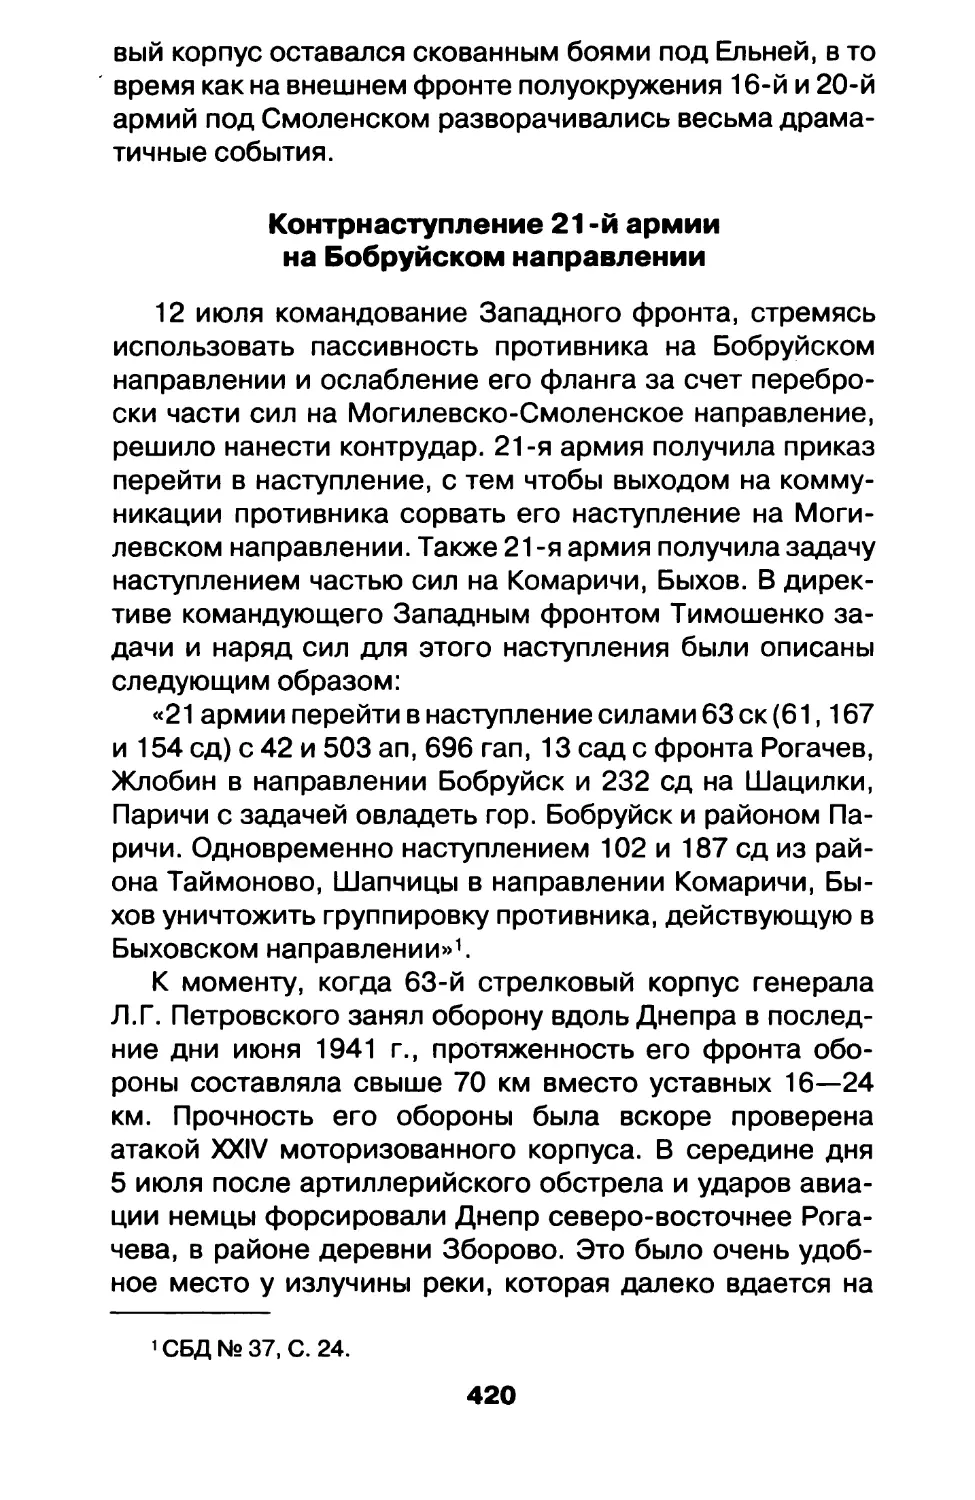 Контрнаступление 21-й армии на Бобруйском направлении